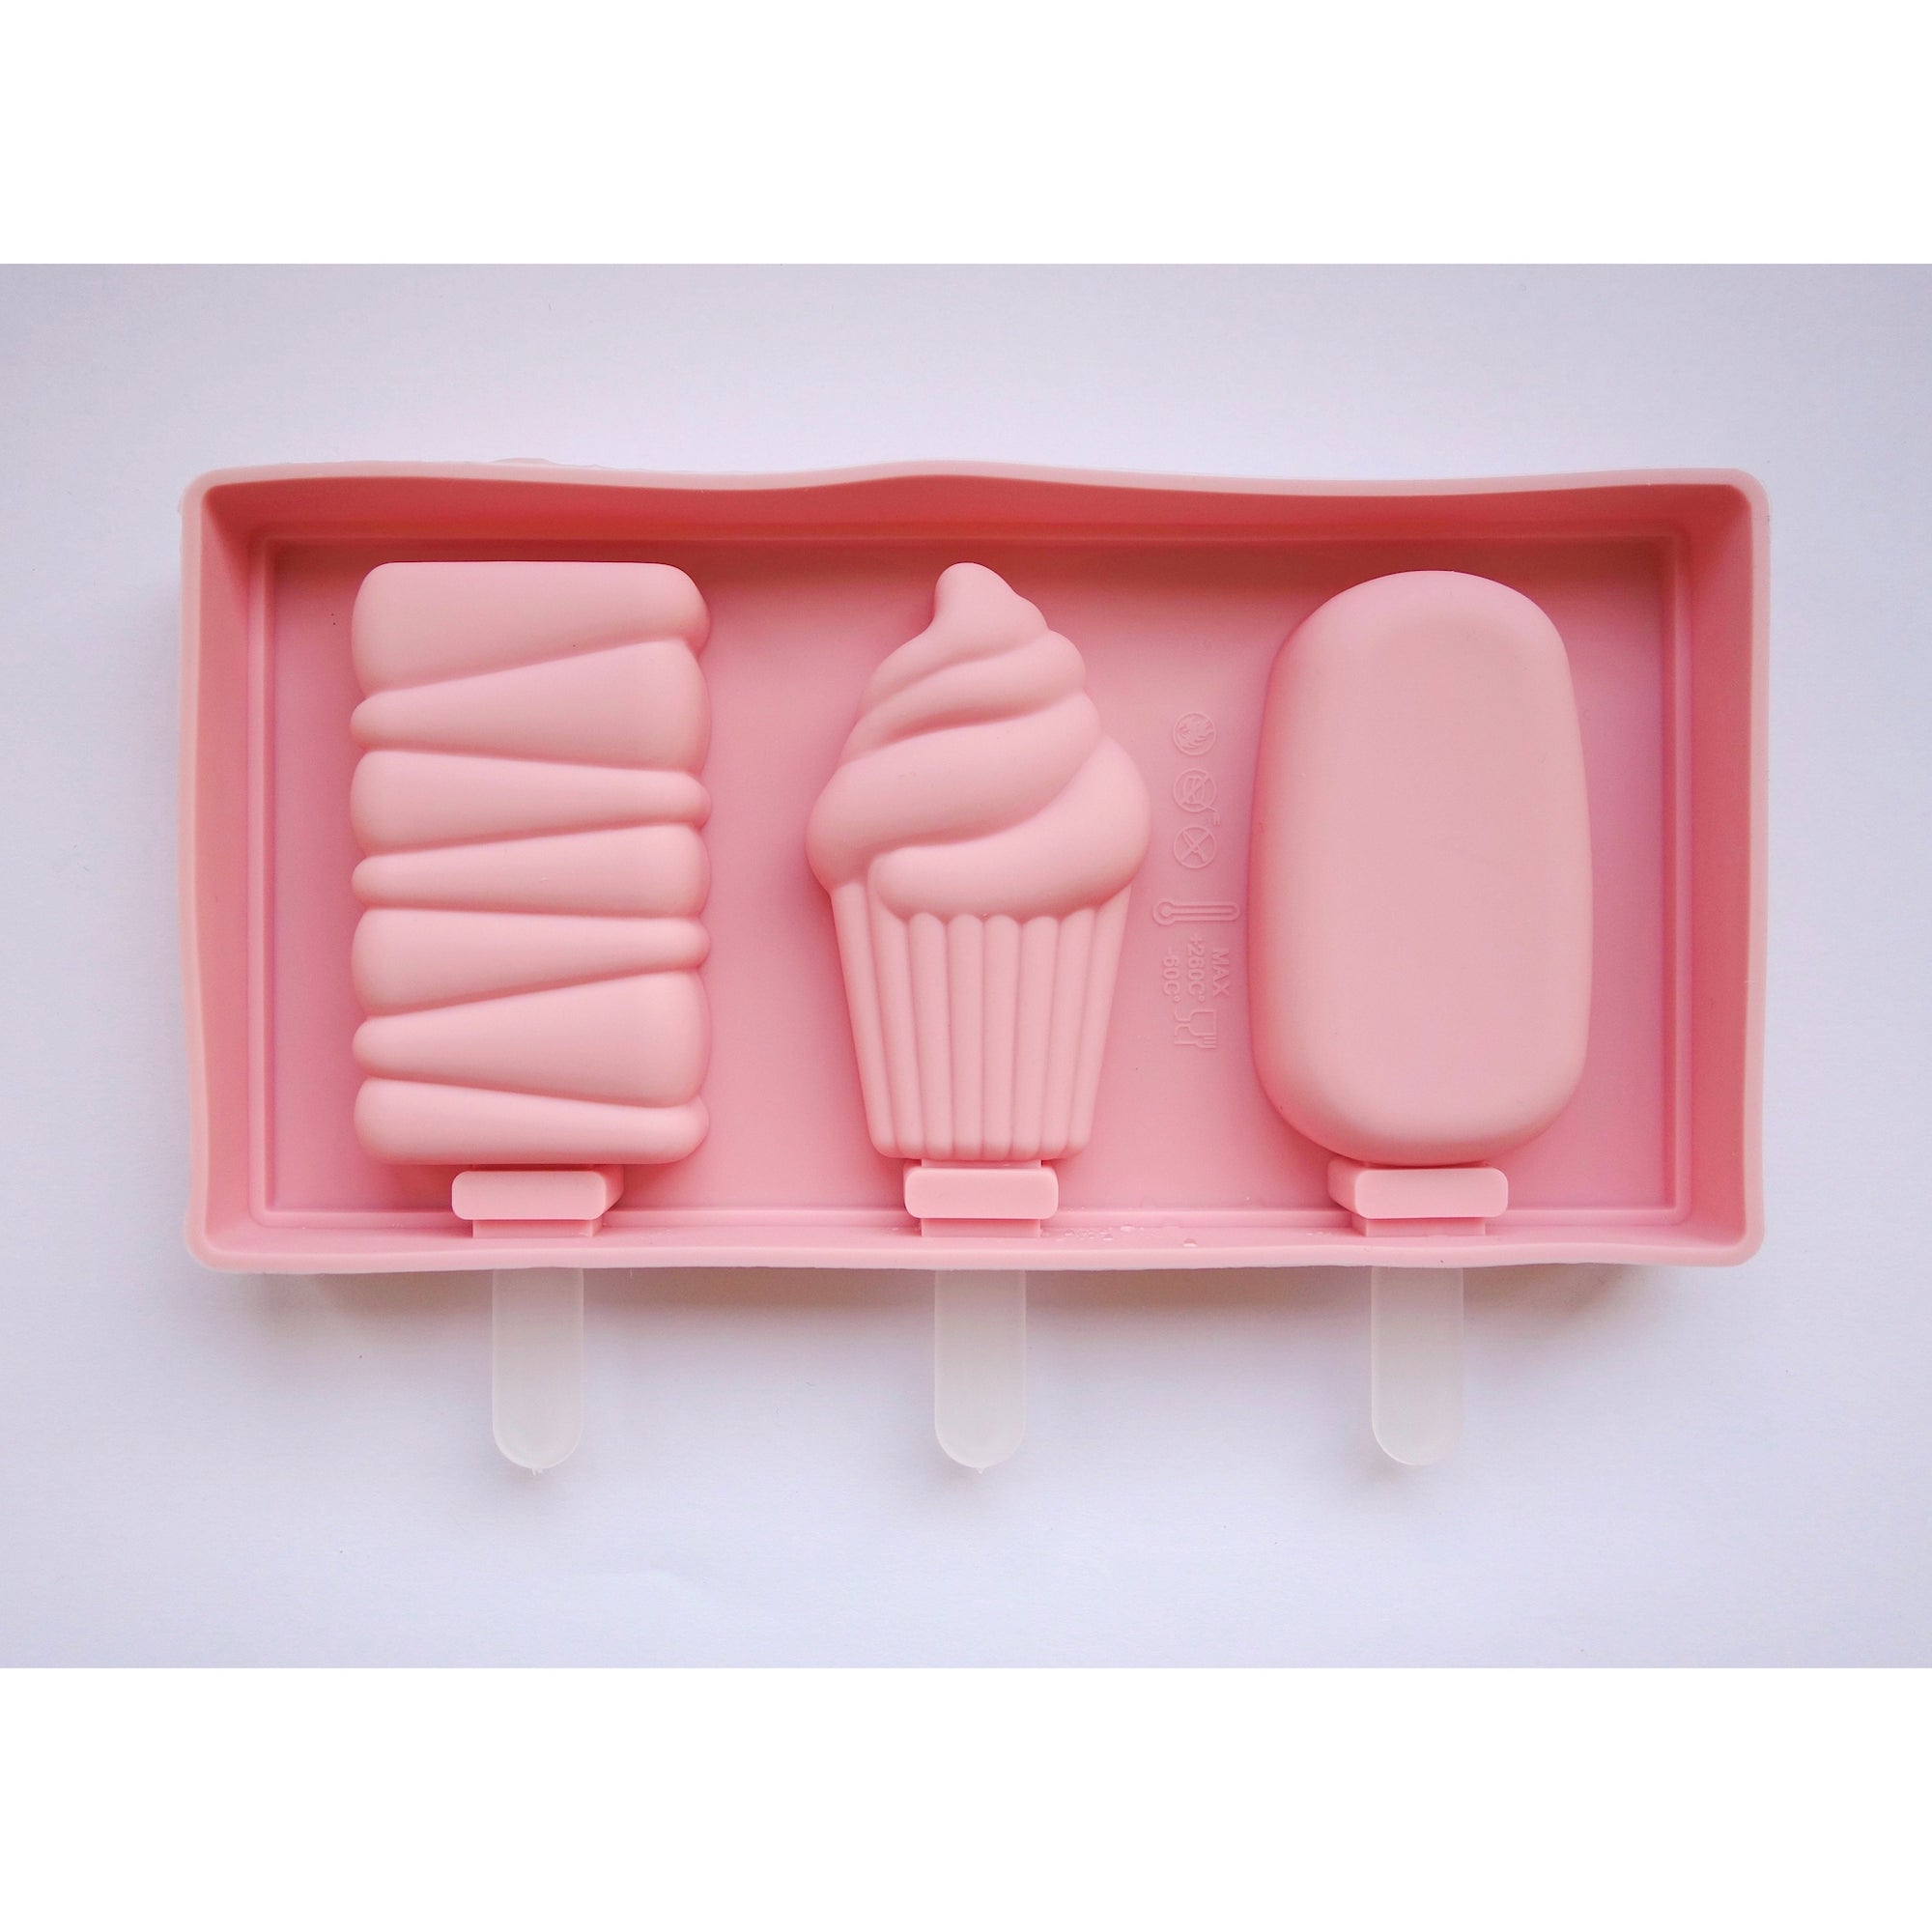 Cakesicle, Cupcake & Rectangle Swirl Cakesicle Mold - Yummy Gummy